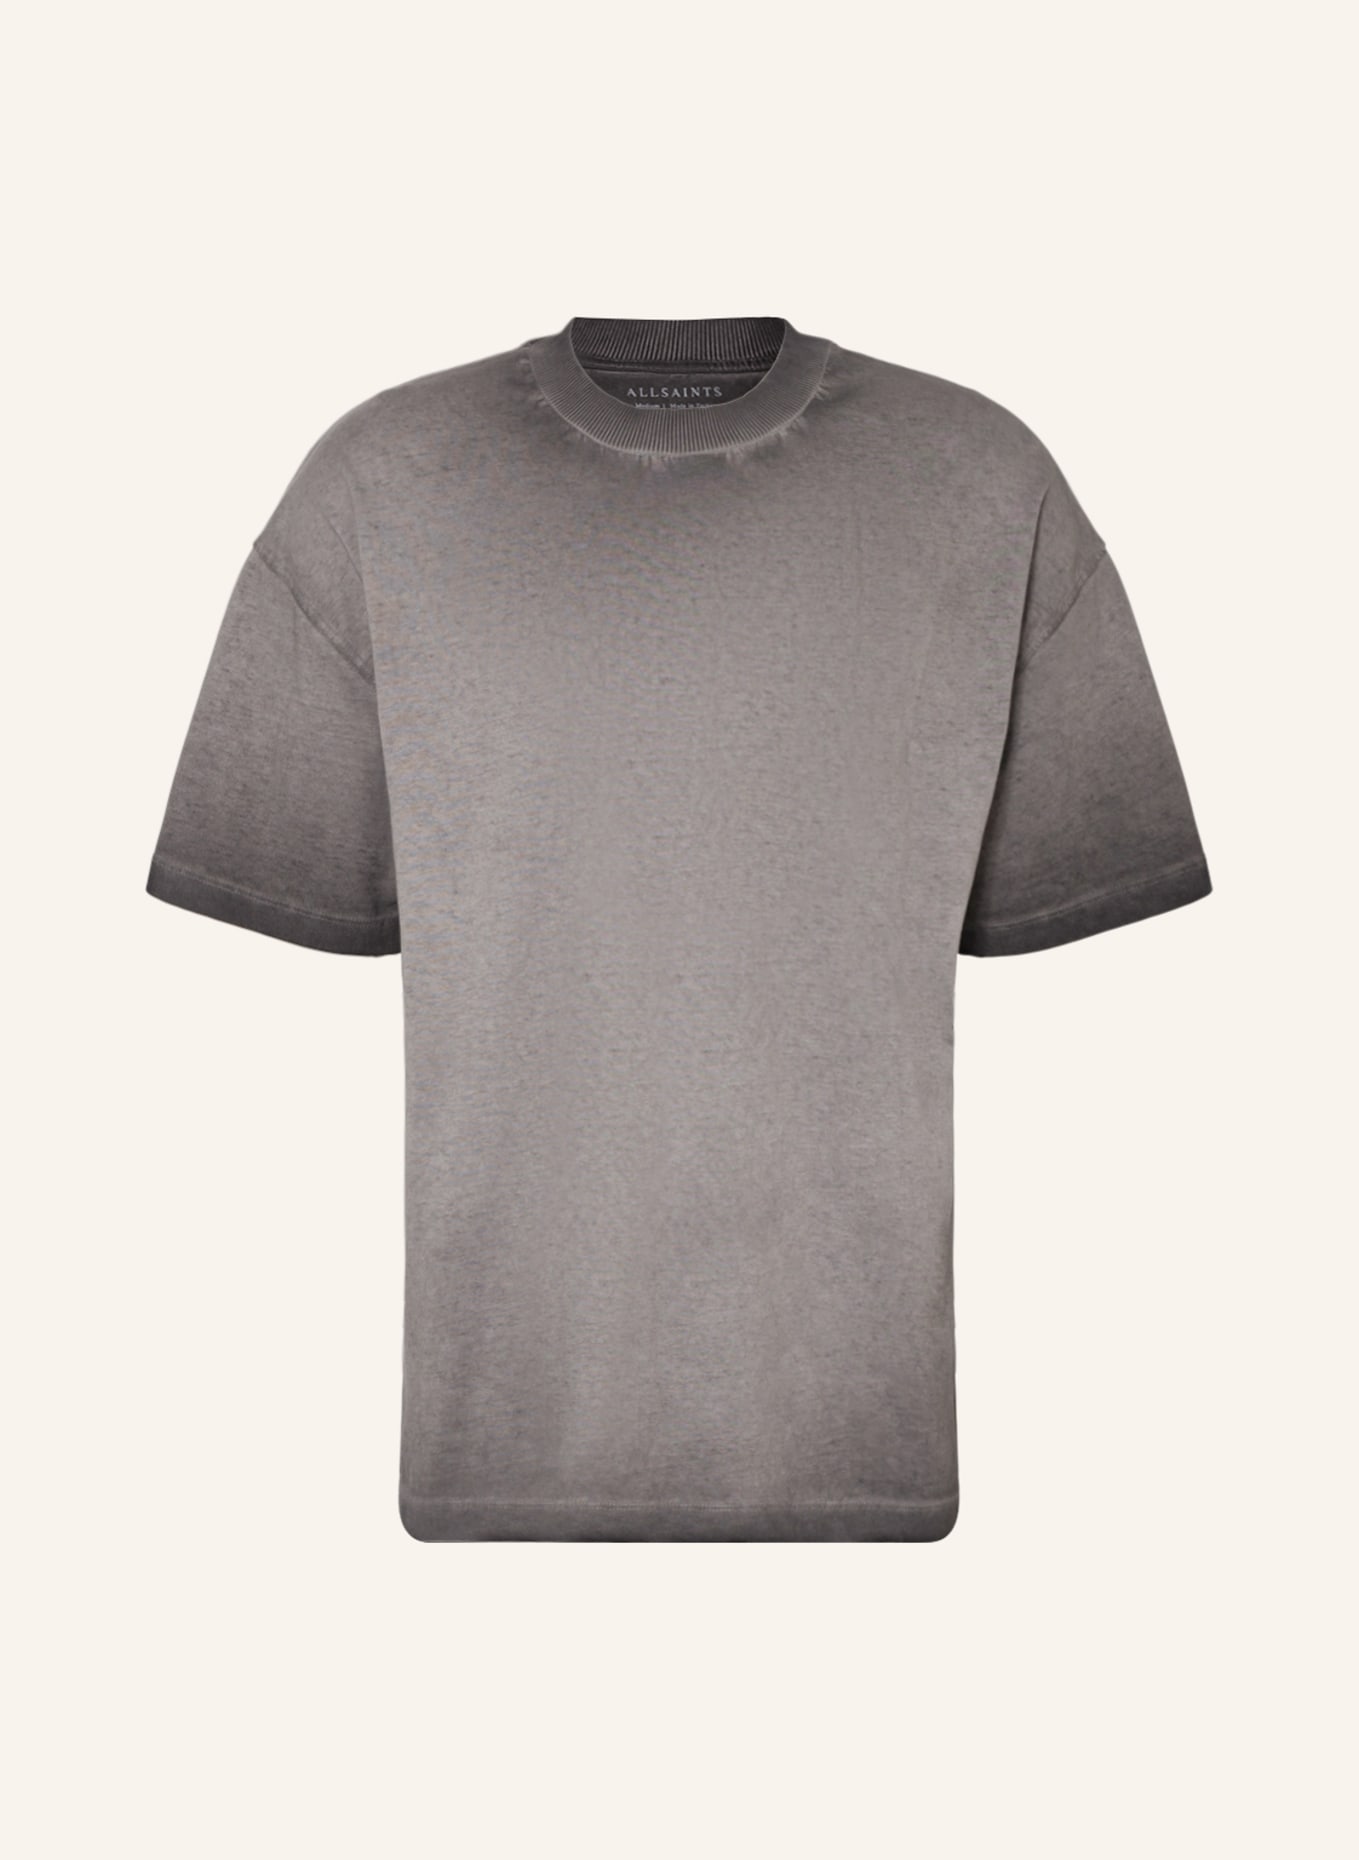 ALLSAINTS Oversized shirt PARC, Color: GRAY (Image 1)